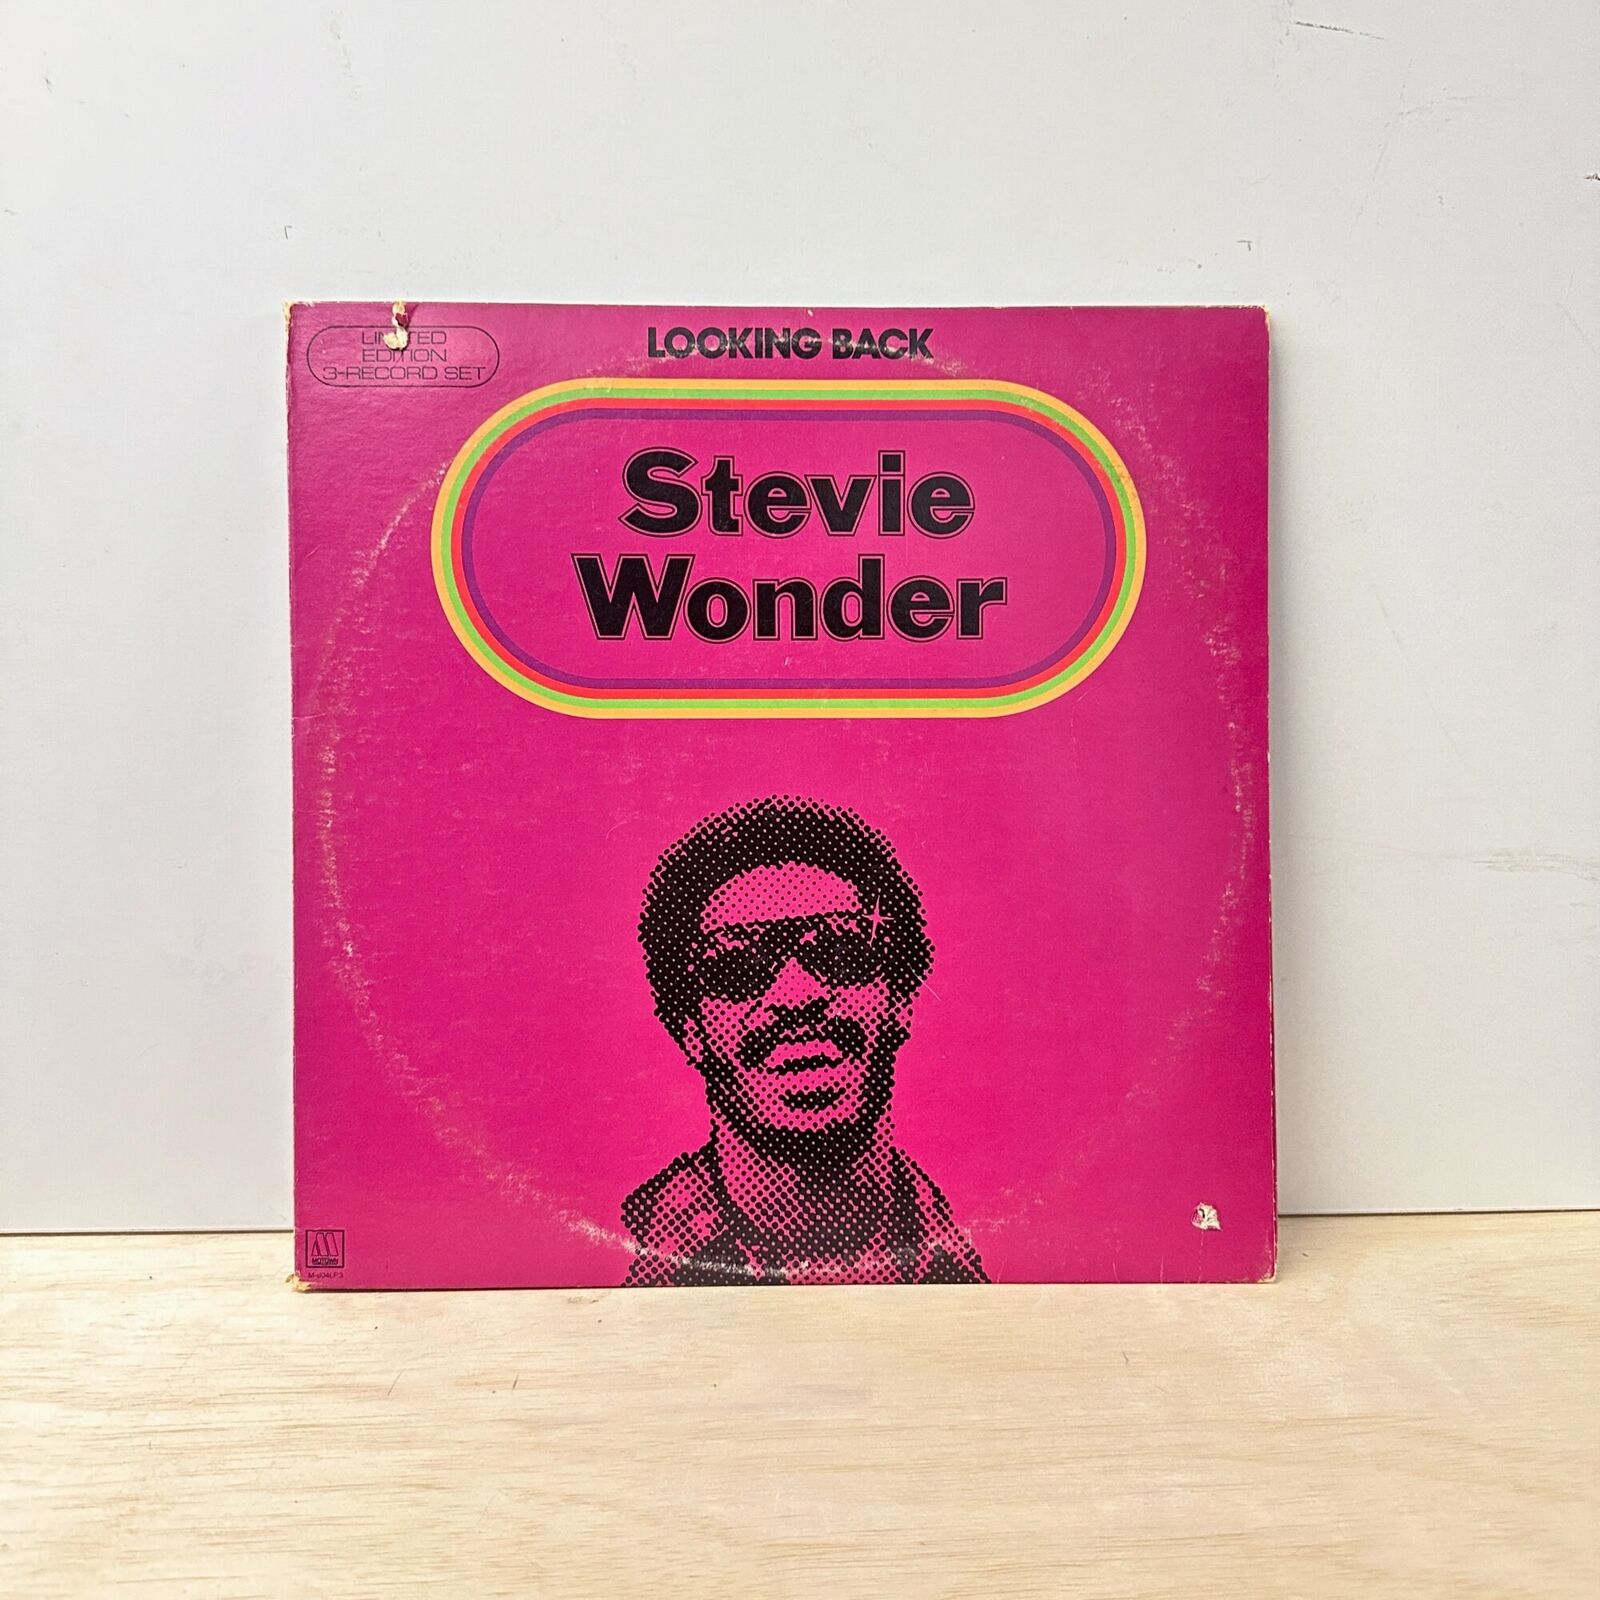 Stevie Wonder - Looking Back - Vinyl LP Record - 1977